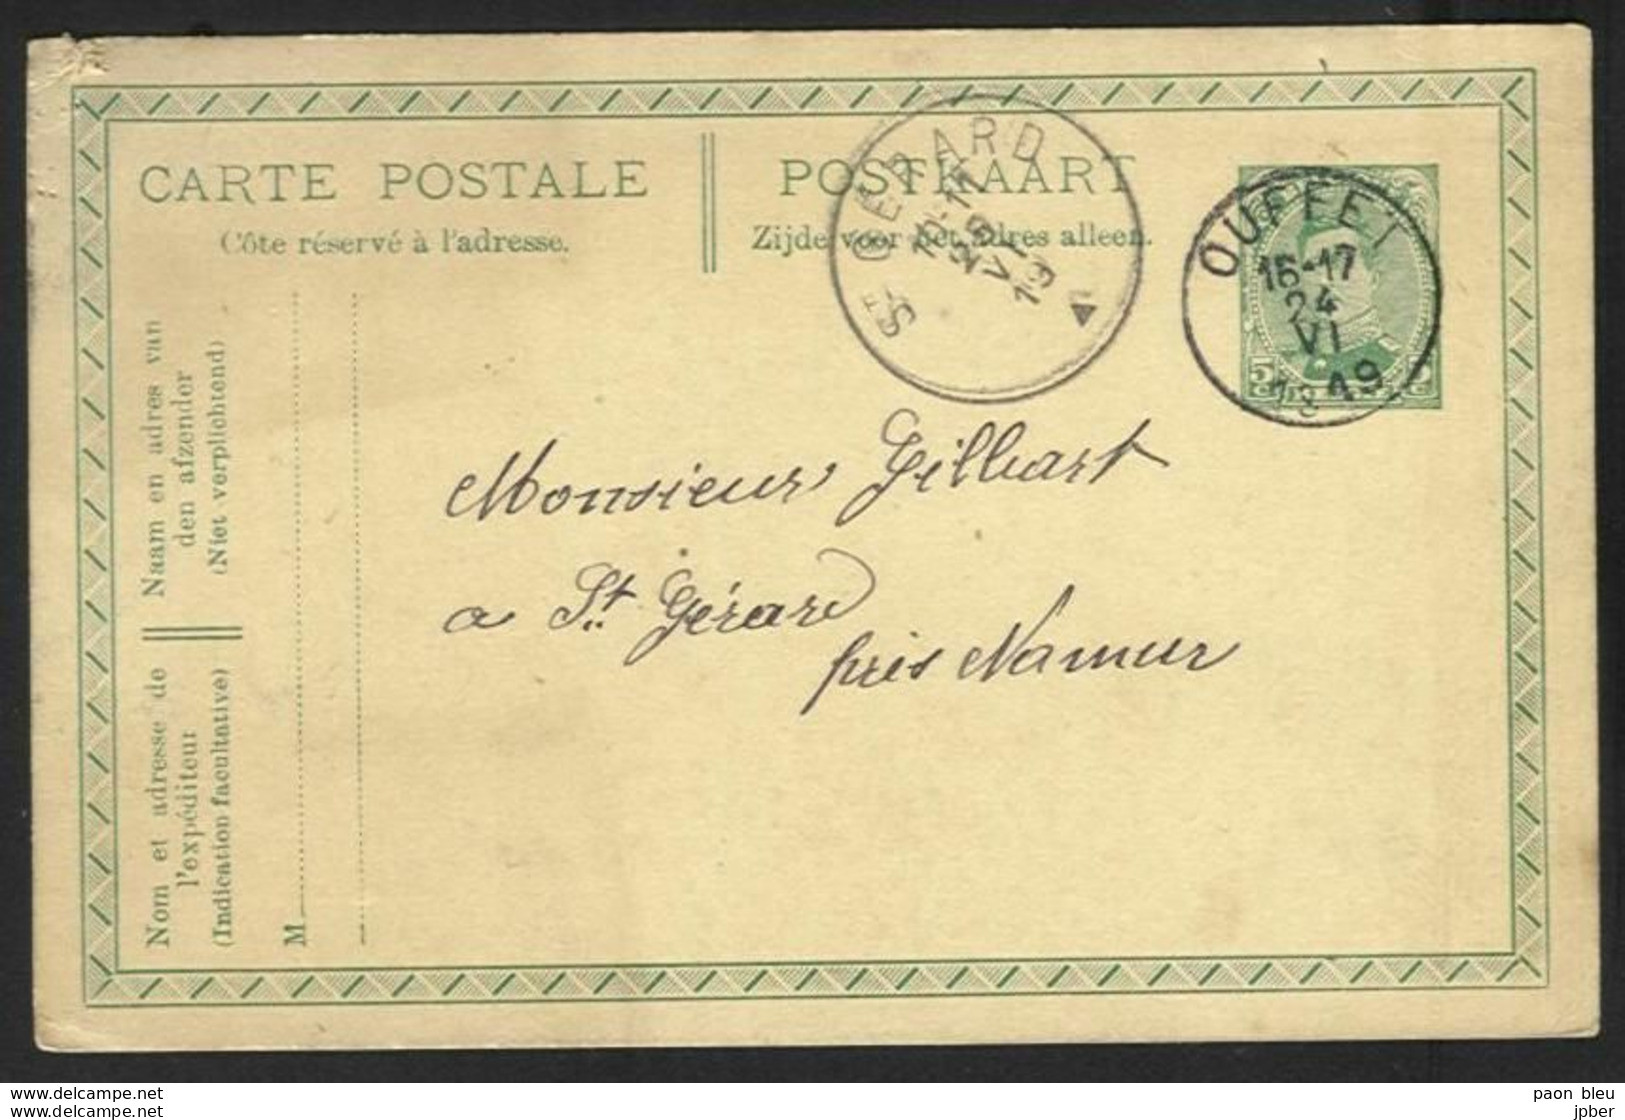 Belgique - Obl.fortune 1919 - Obl. OUFFET Siècle Gratté + Cachet St Gérard - Fortune Cancels (1919)